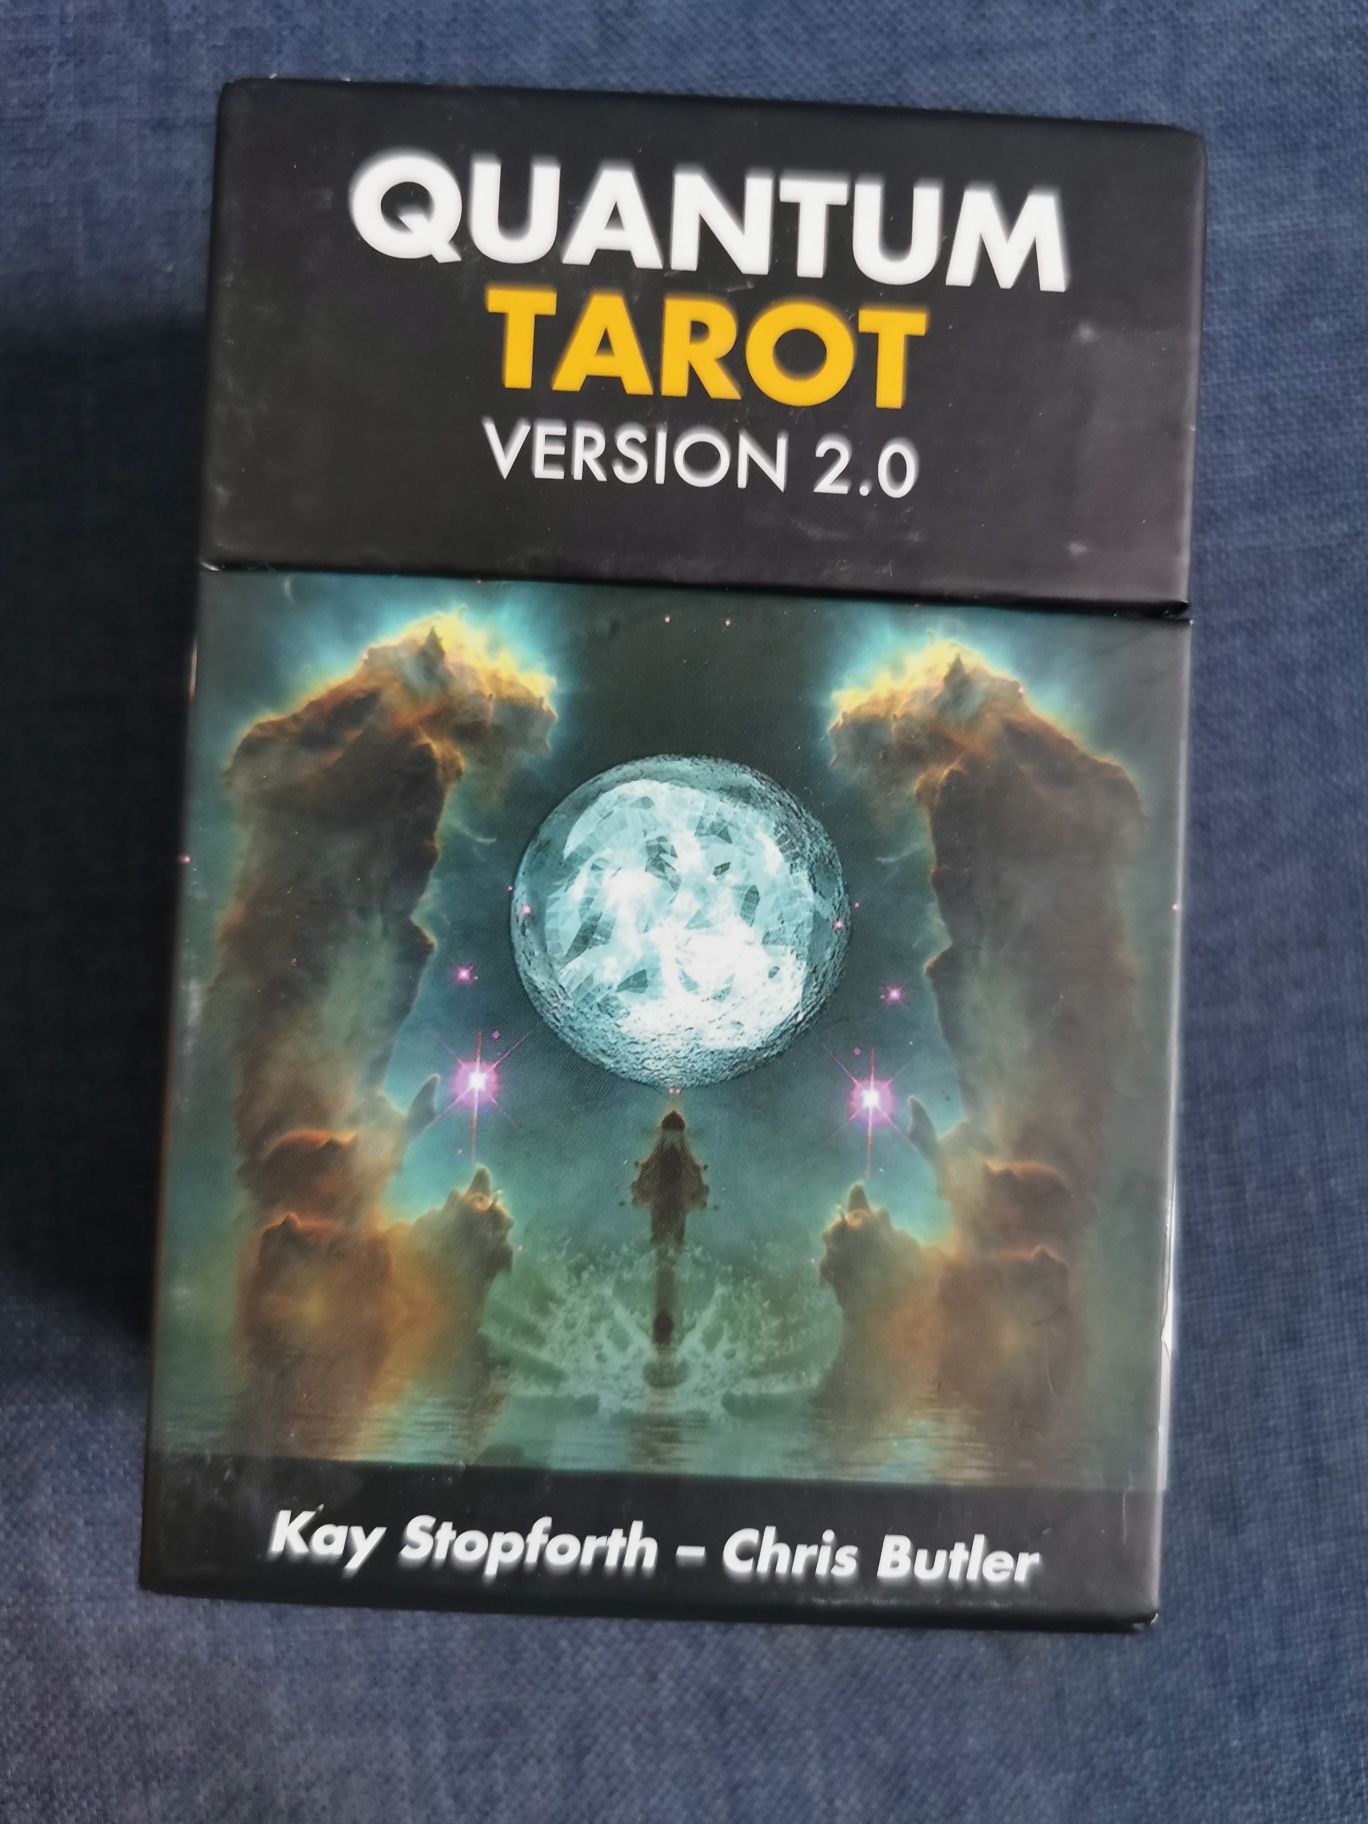 Quantum tarot version 2.0